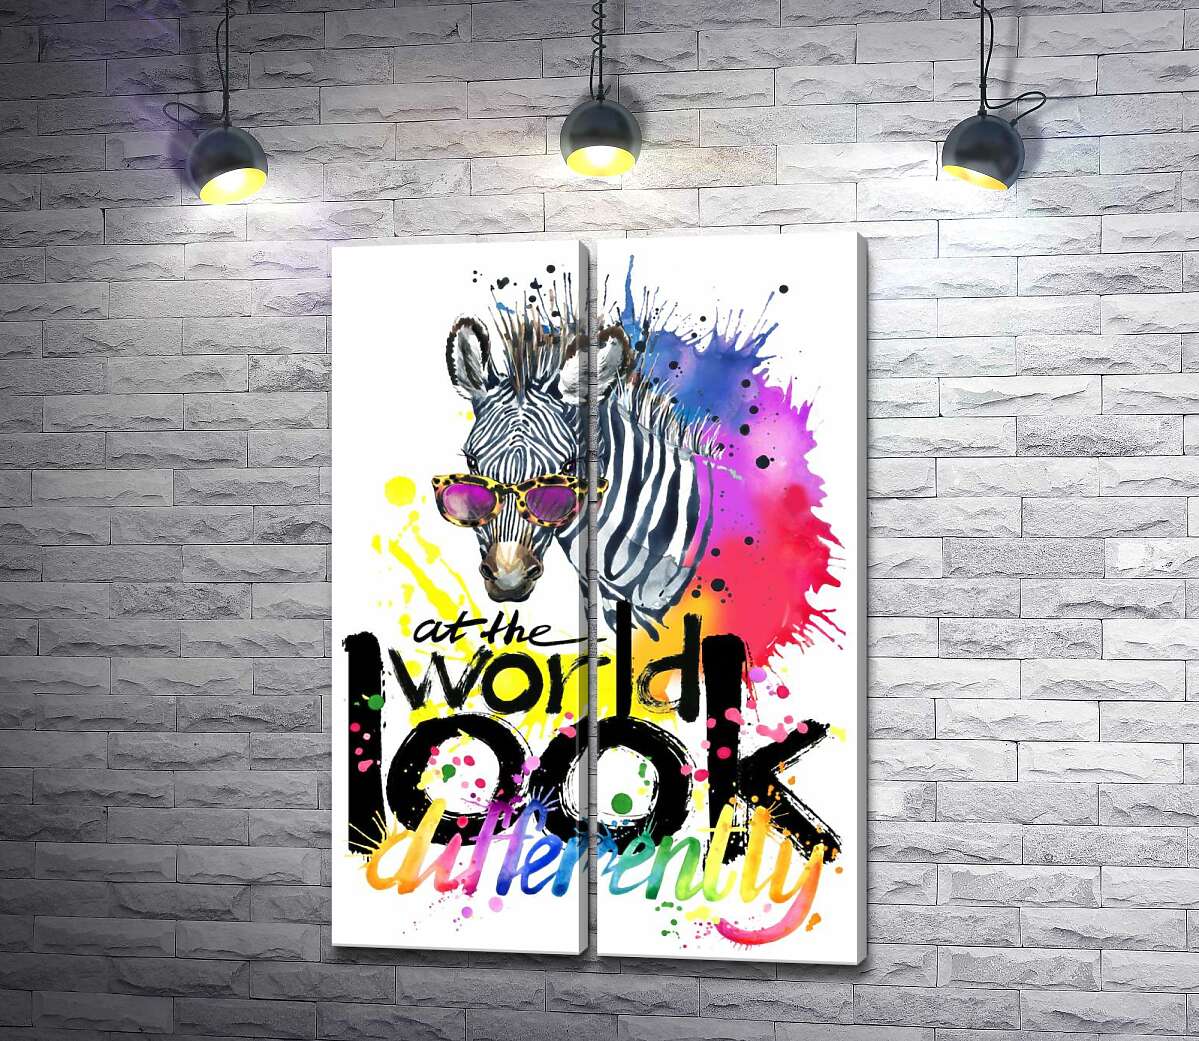 модульная картина Стильная зебра в очках с надписью "look at the world differently"